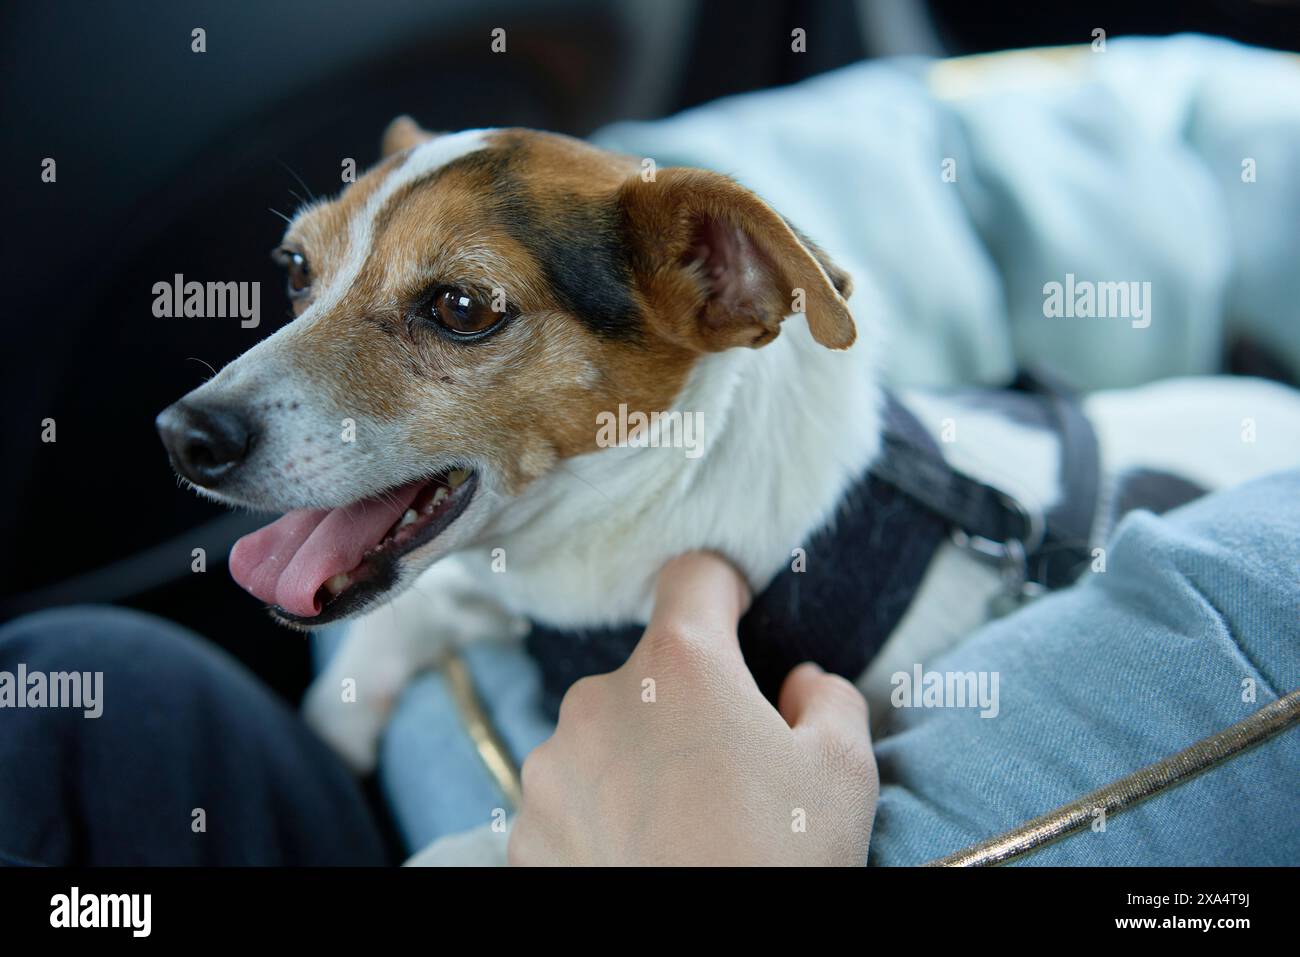 Un cane Jack Russell Terrier che indossa un'imbragatura siede in un'auto, guardando lateralmente mentre la mano di una persona lo accarezza. Foto Stock